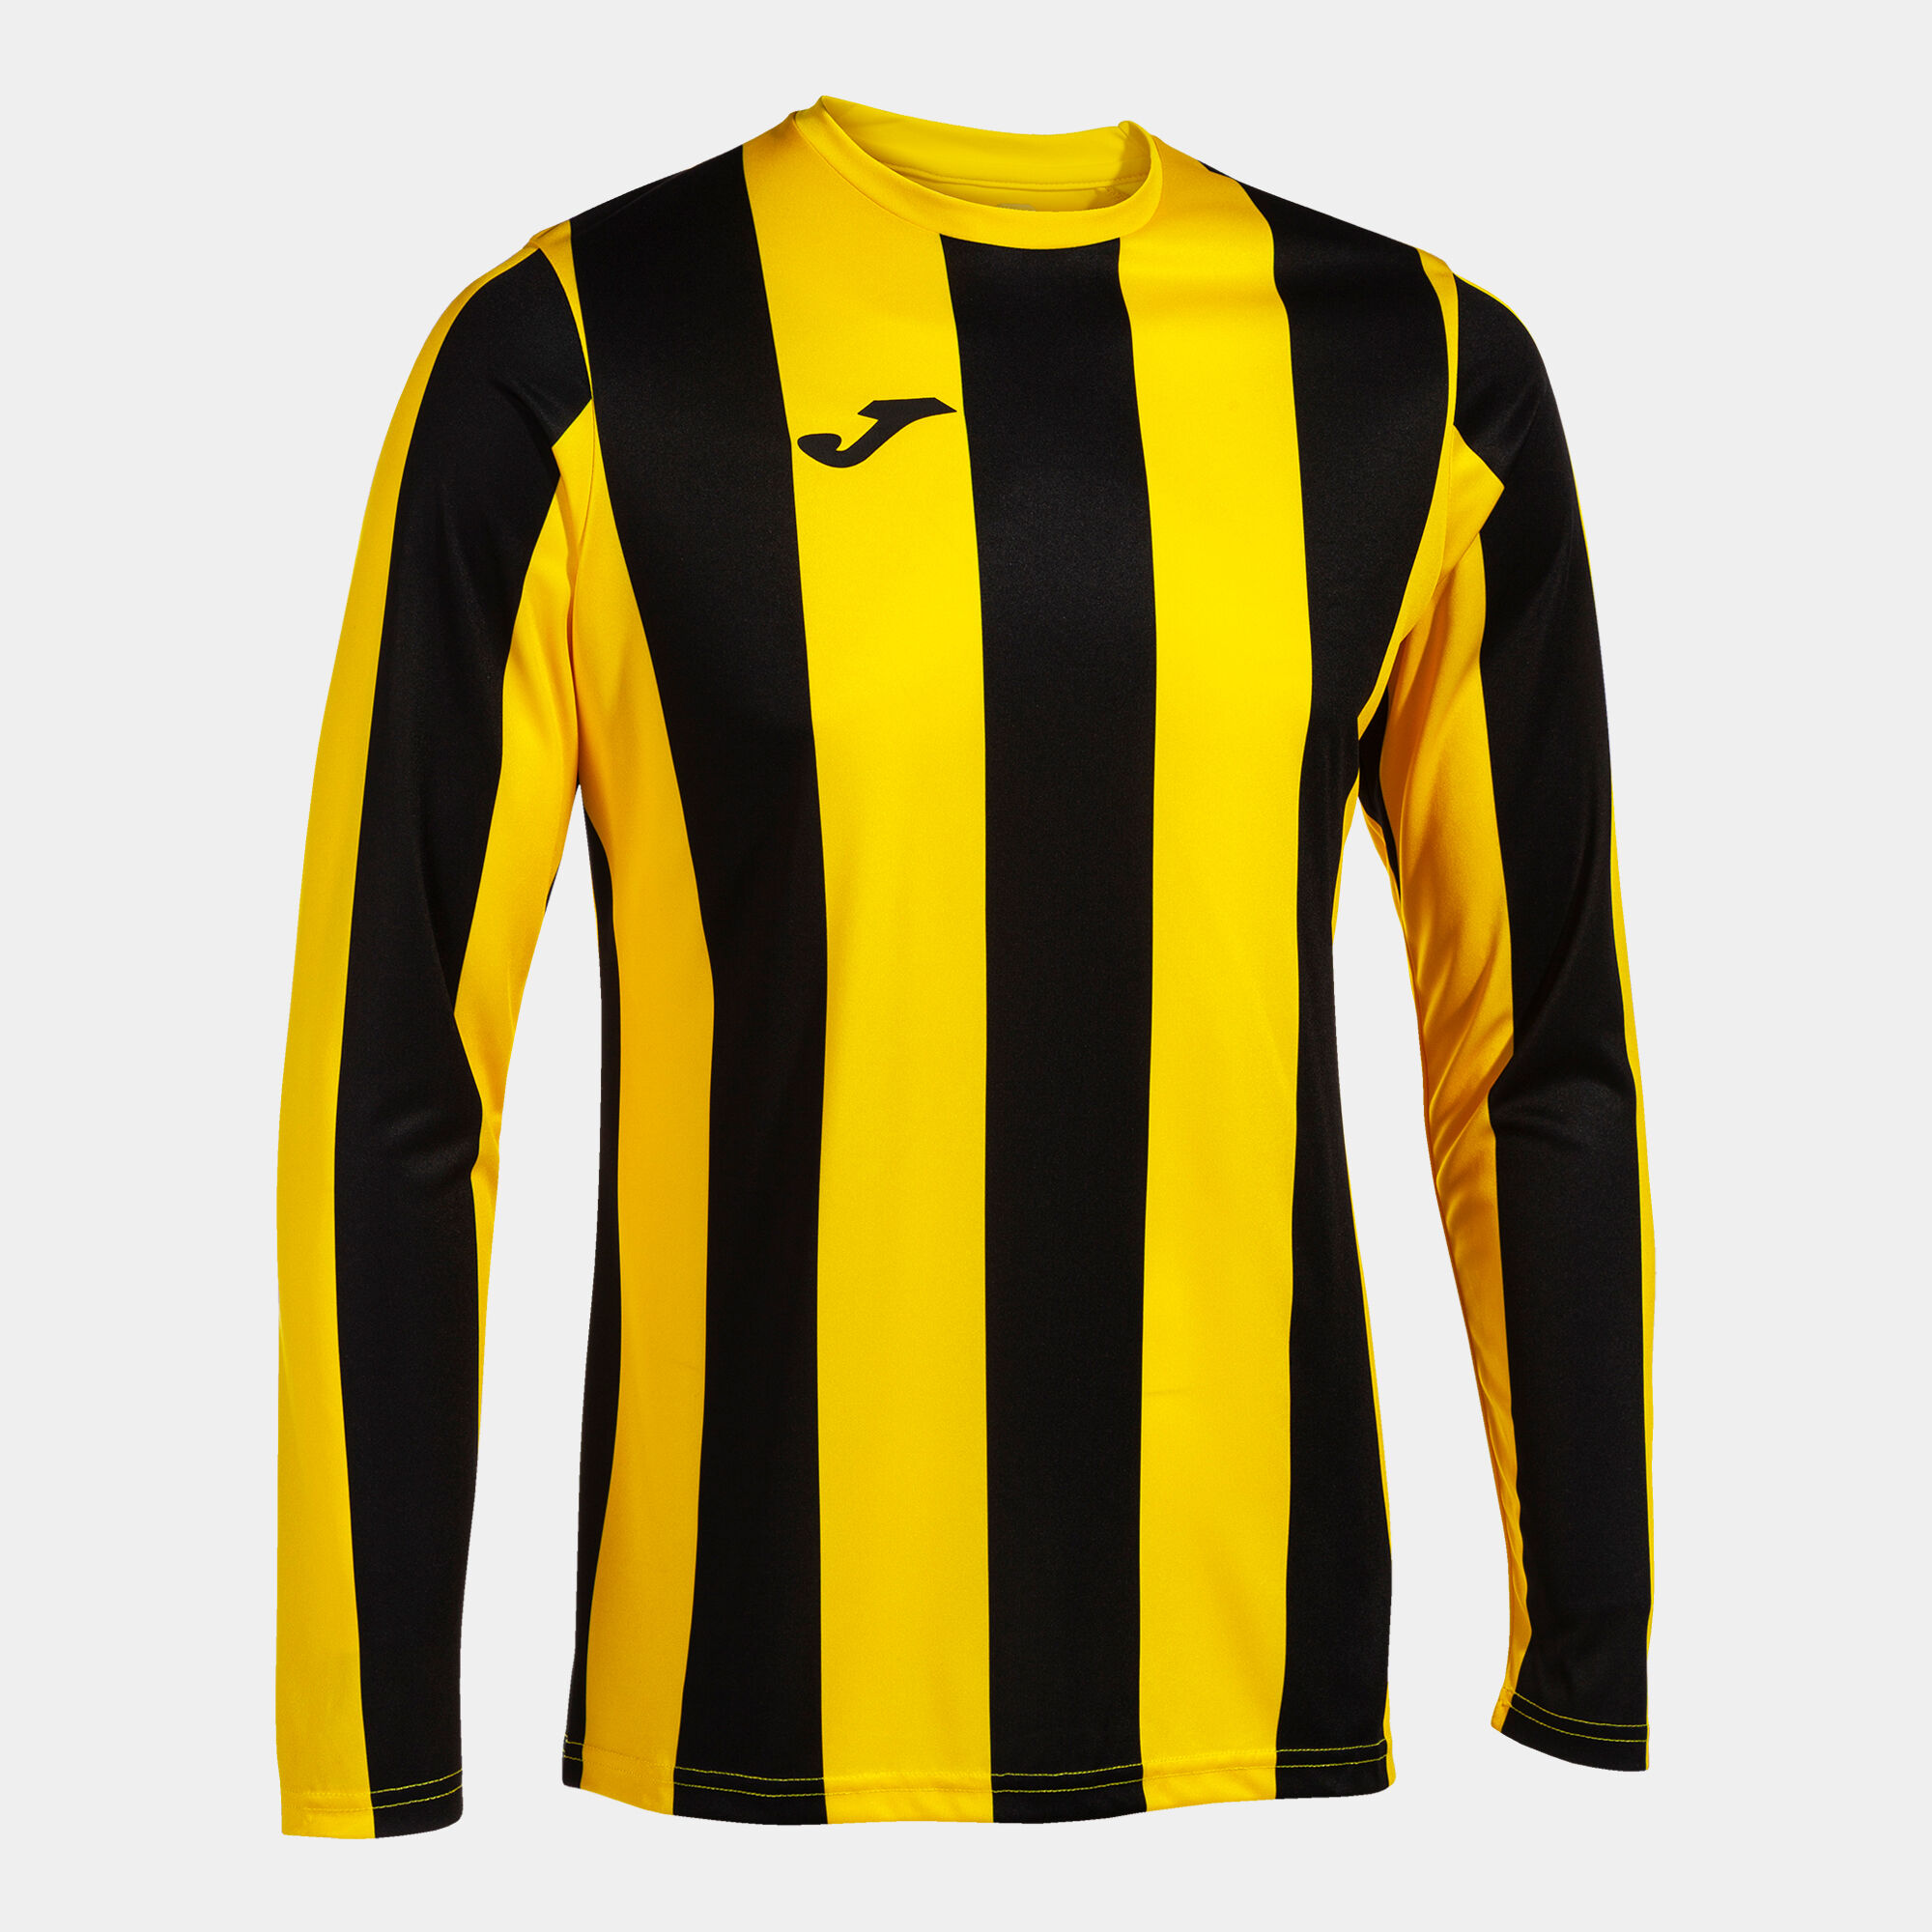 Camiseta manga larga hombre Inter Classic amarillo negro